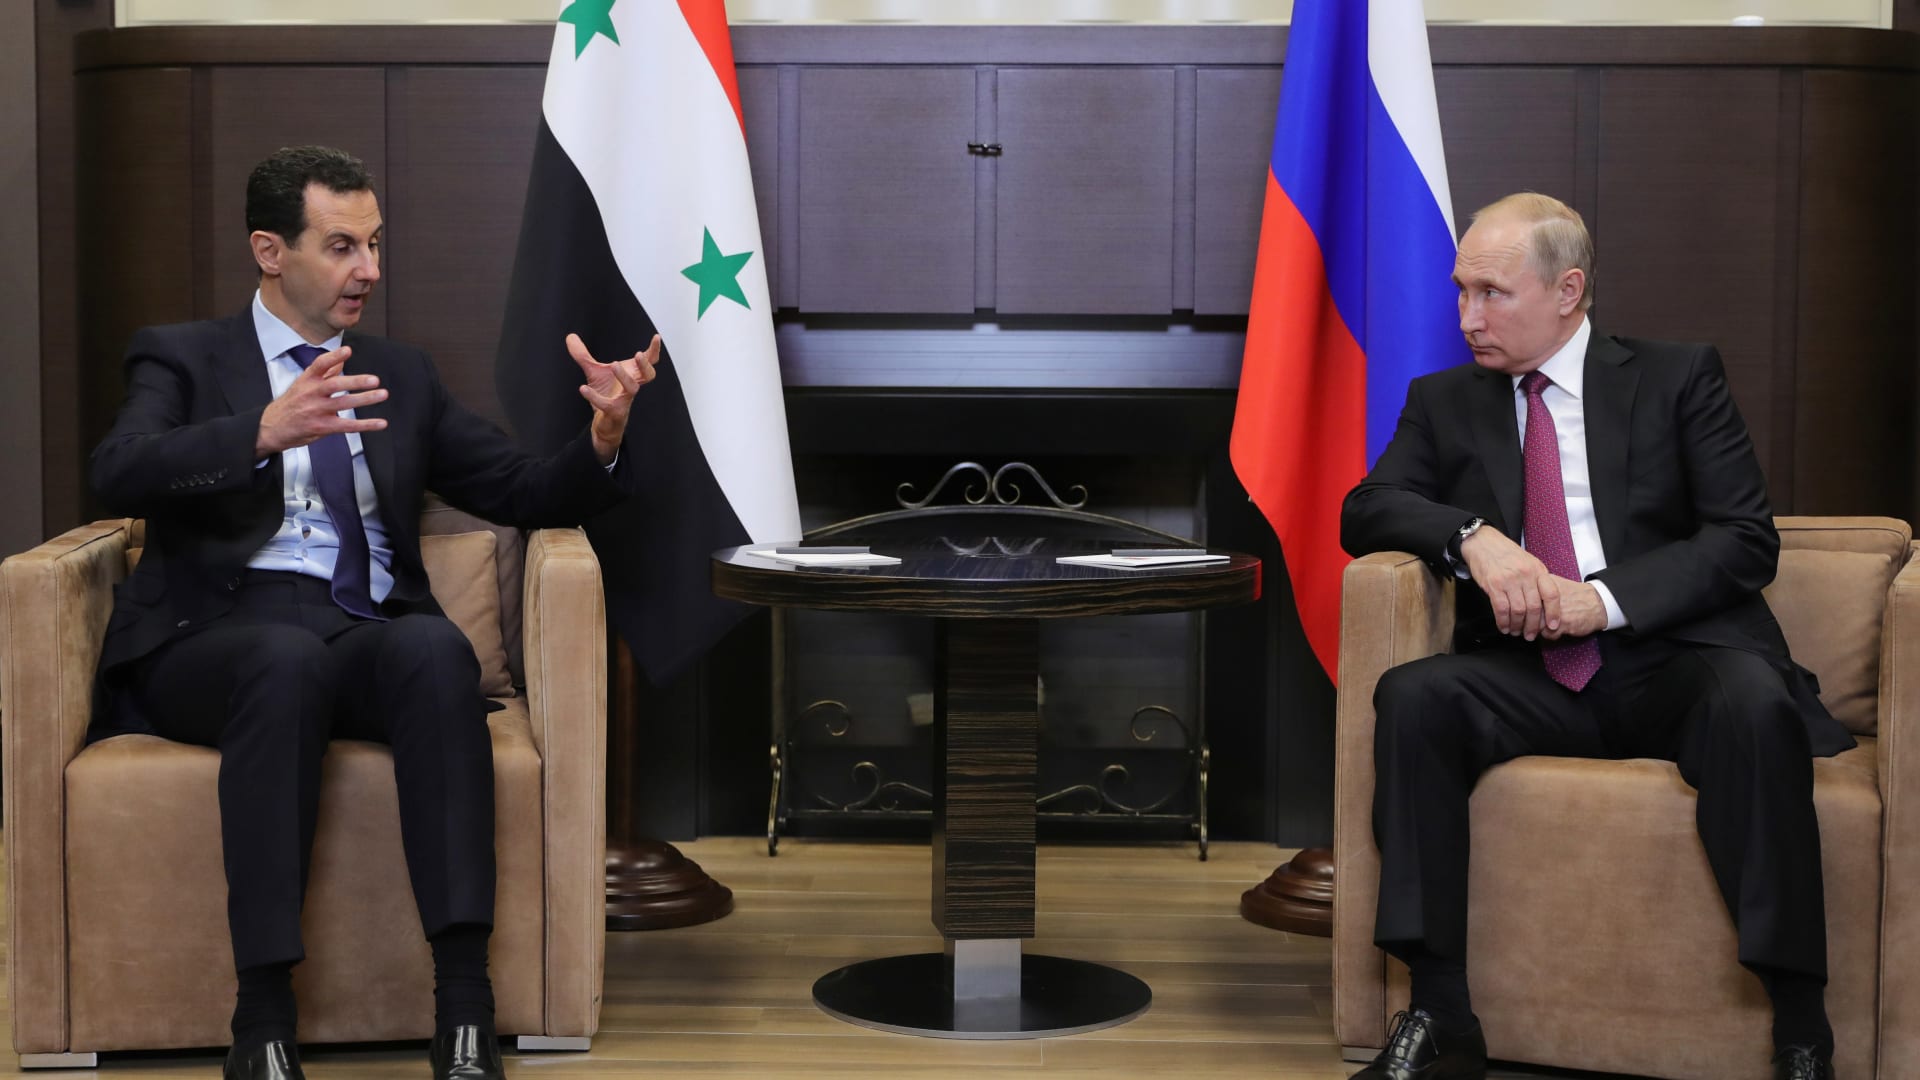 "مصير شرق سوريا" على أجندة اجتماع بوتين وأردوغان في سوتشي